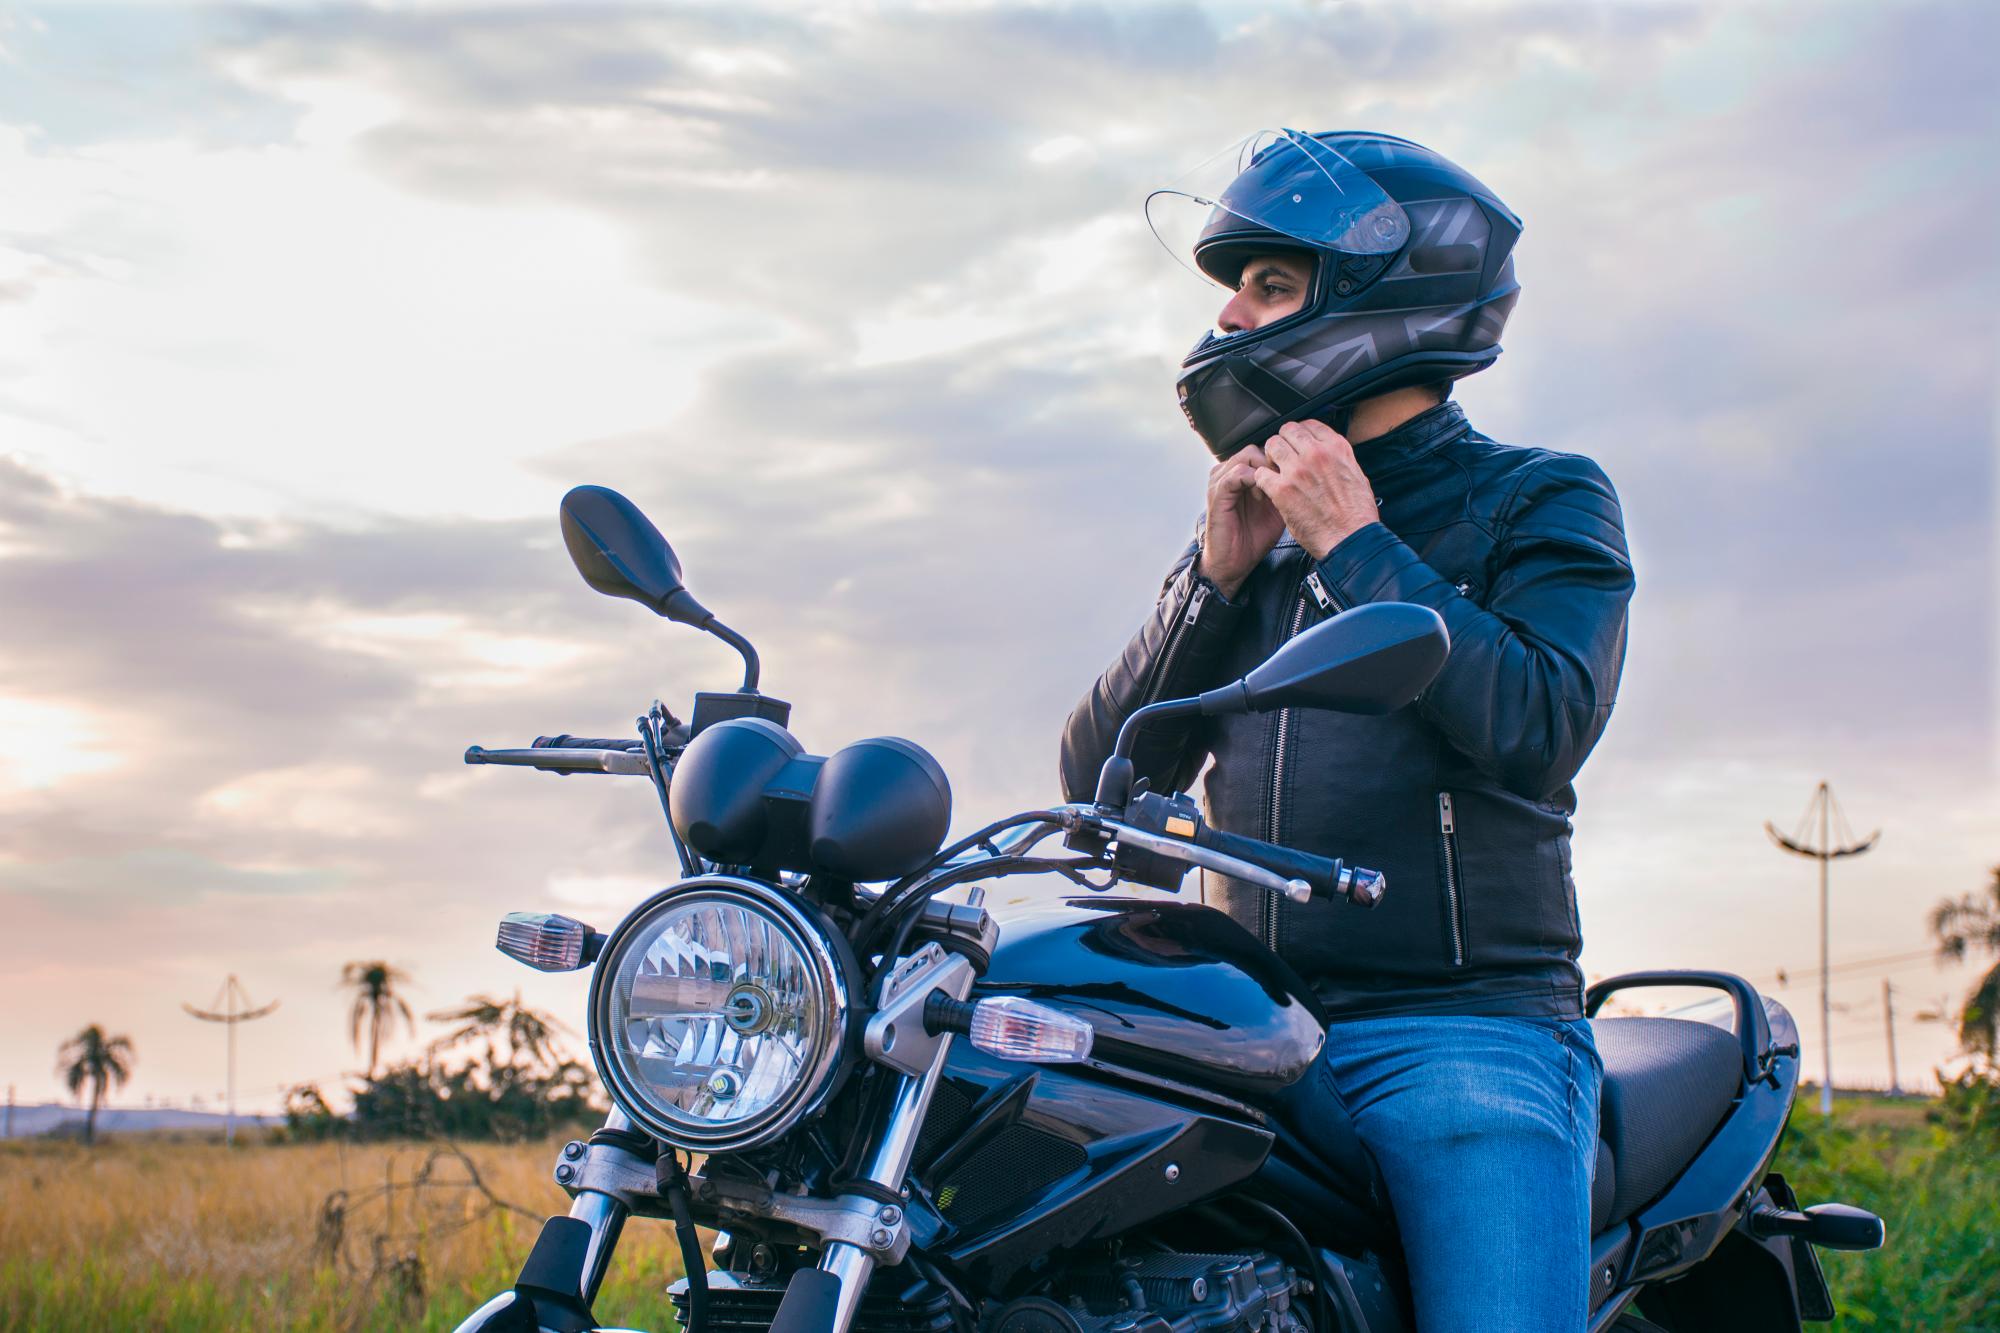 La importancia de usar el casco cuando viajas en moto